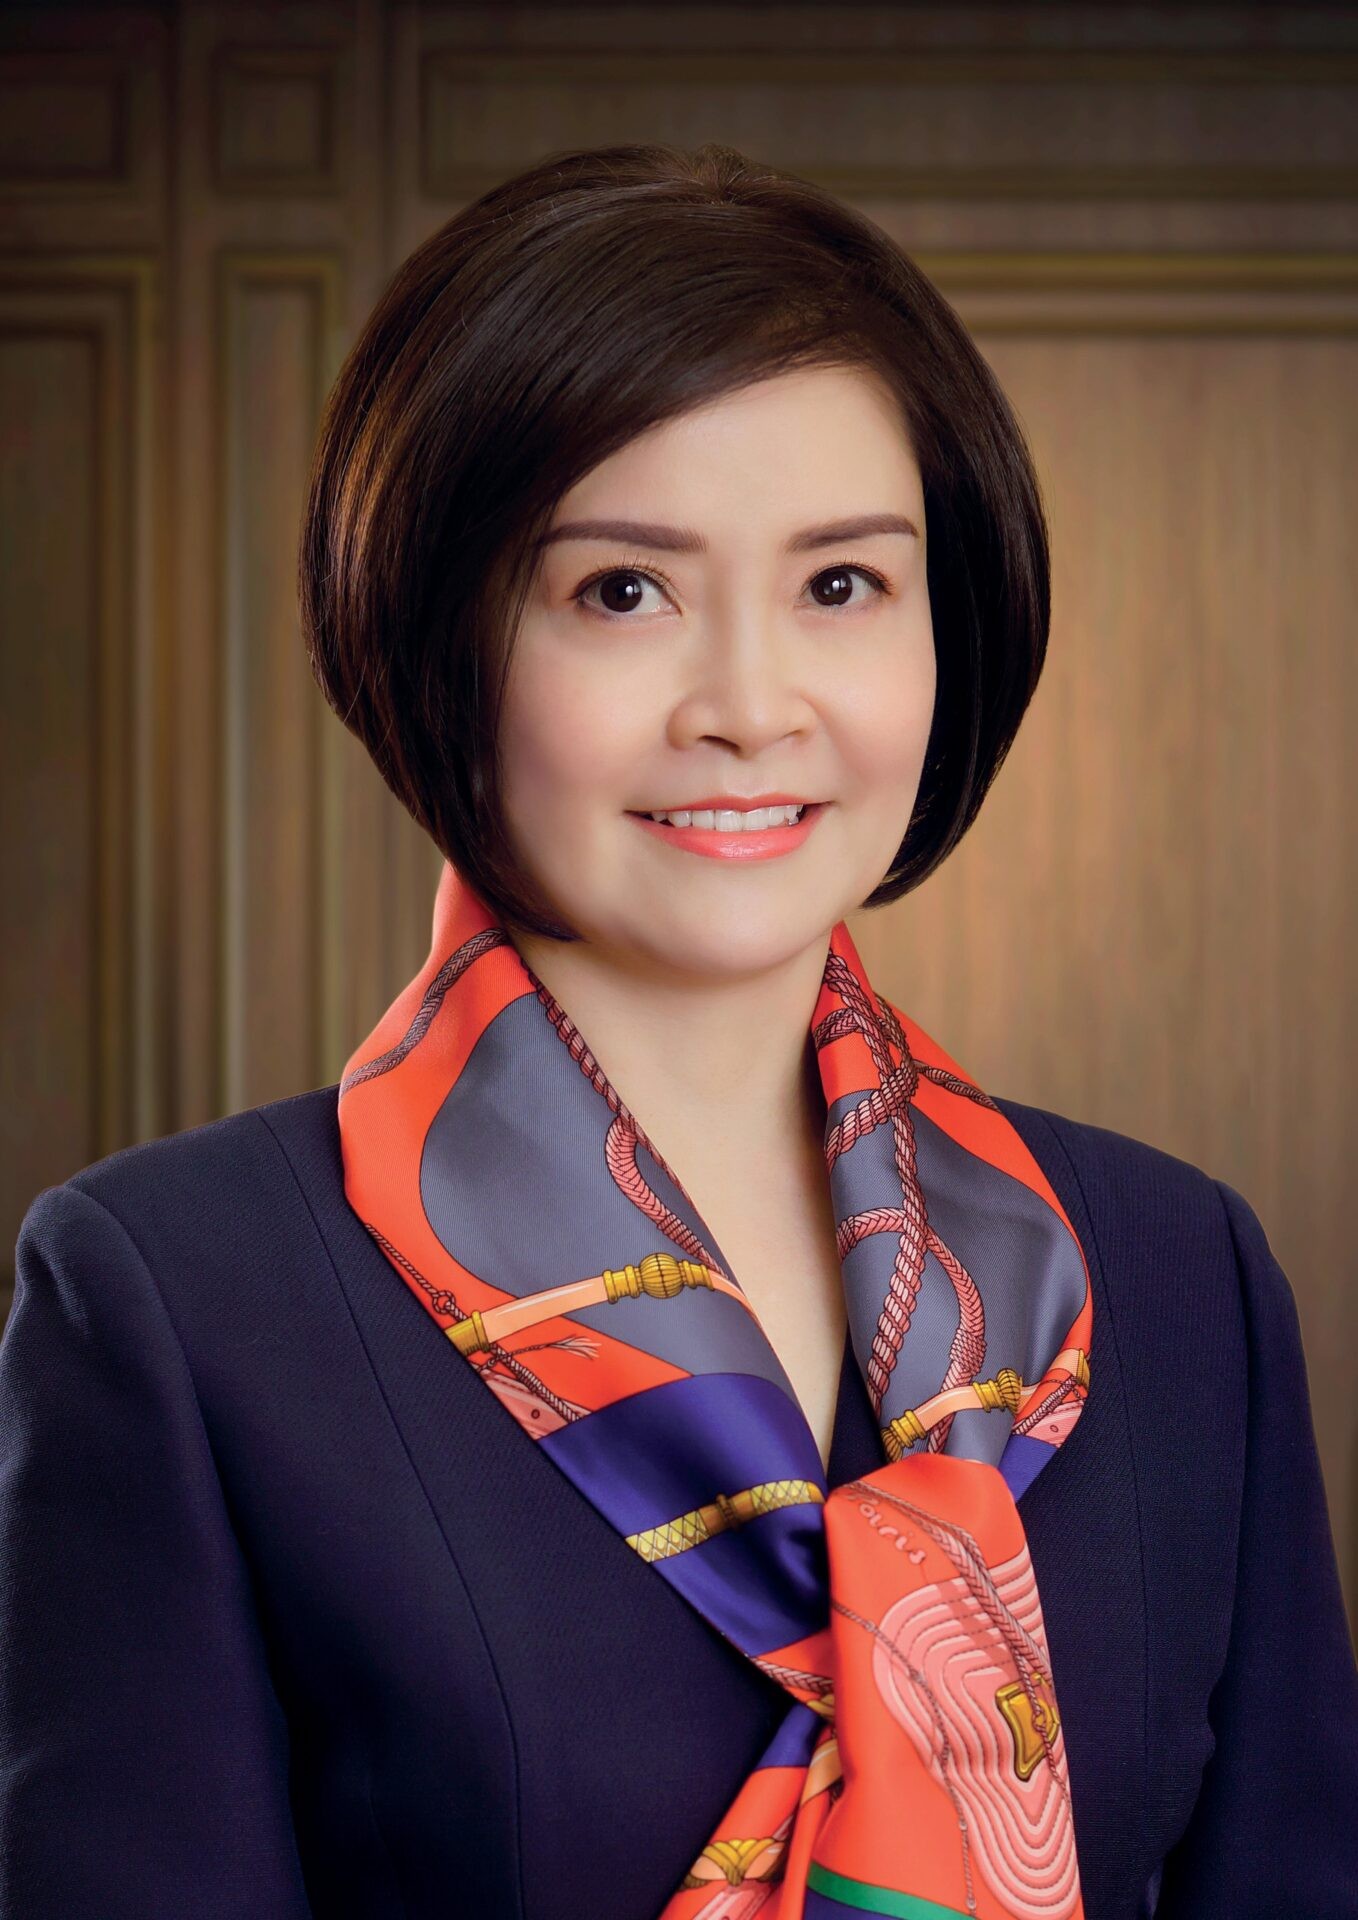 
Bà Nguyễn Diệu Linh
